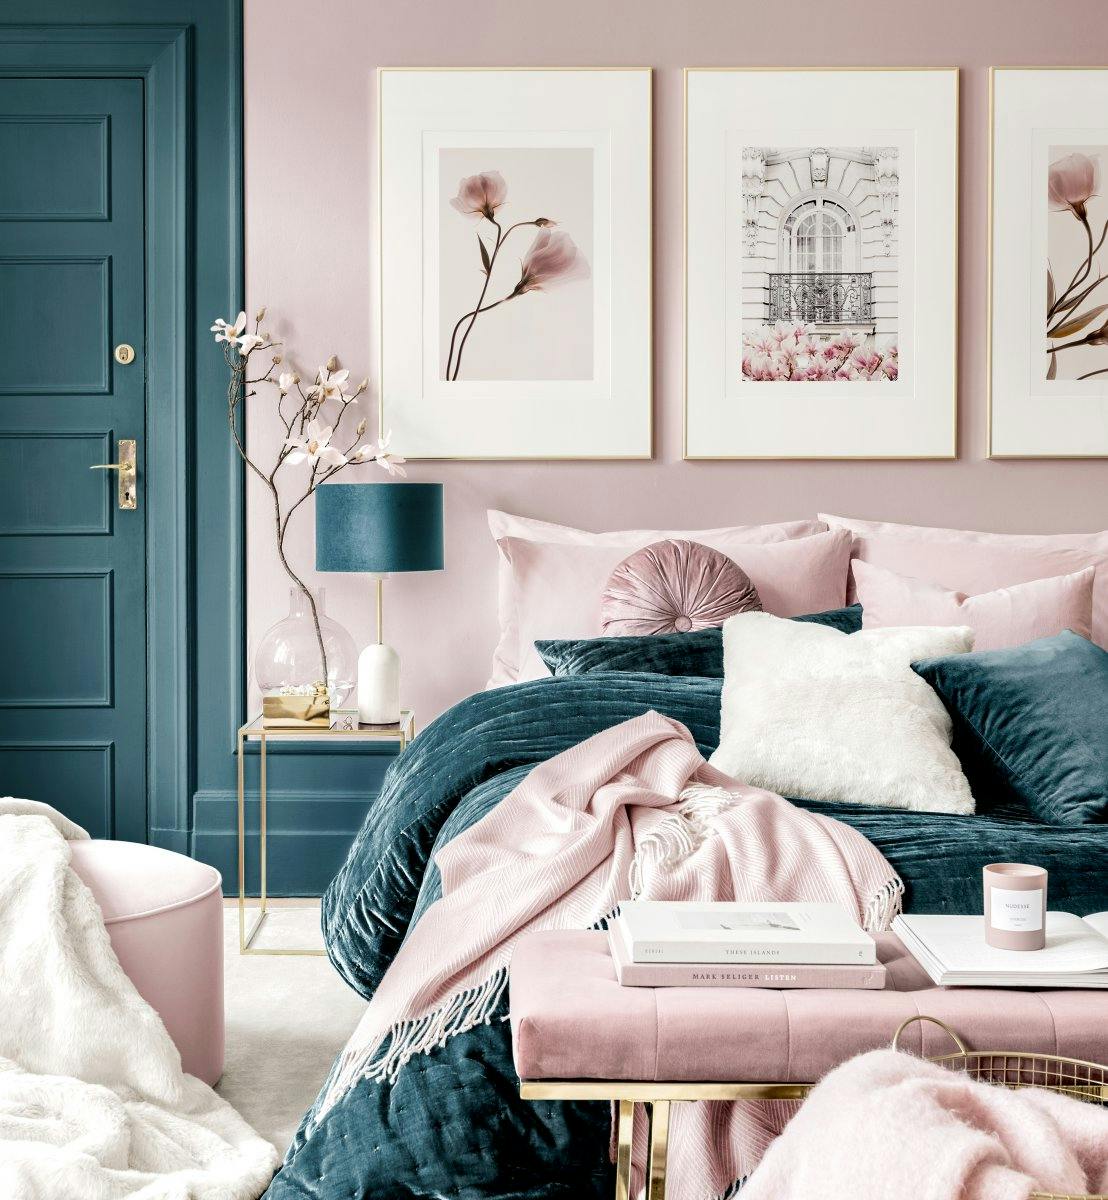 mural de cuadros rosas dormitorio posters marcos dorados